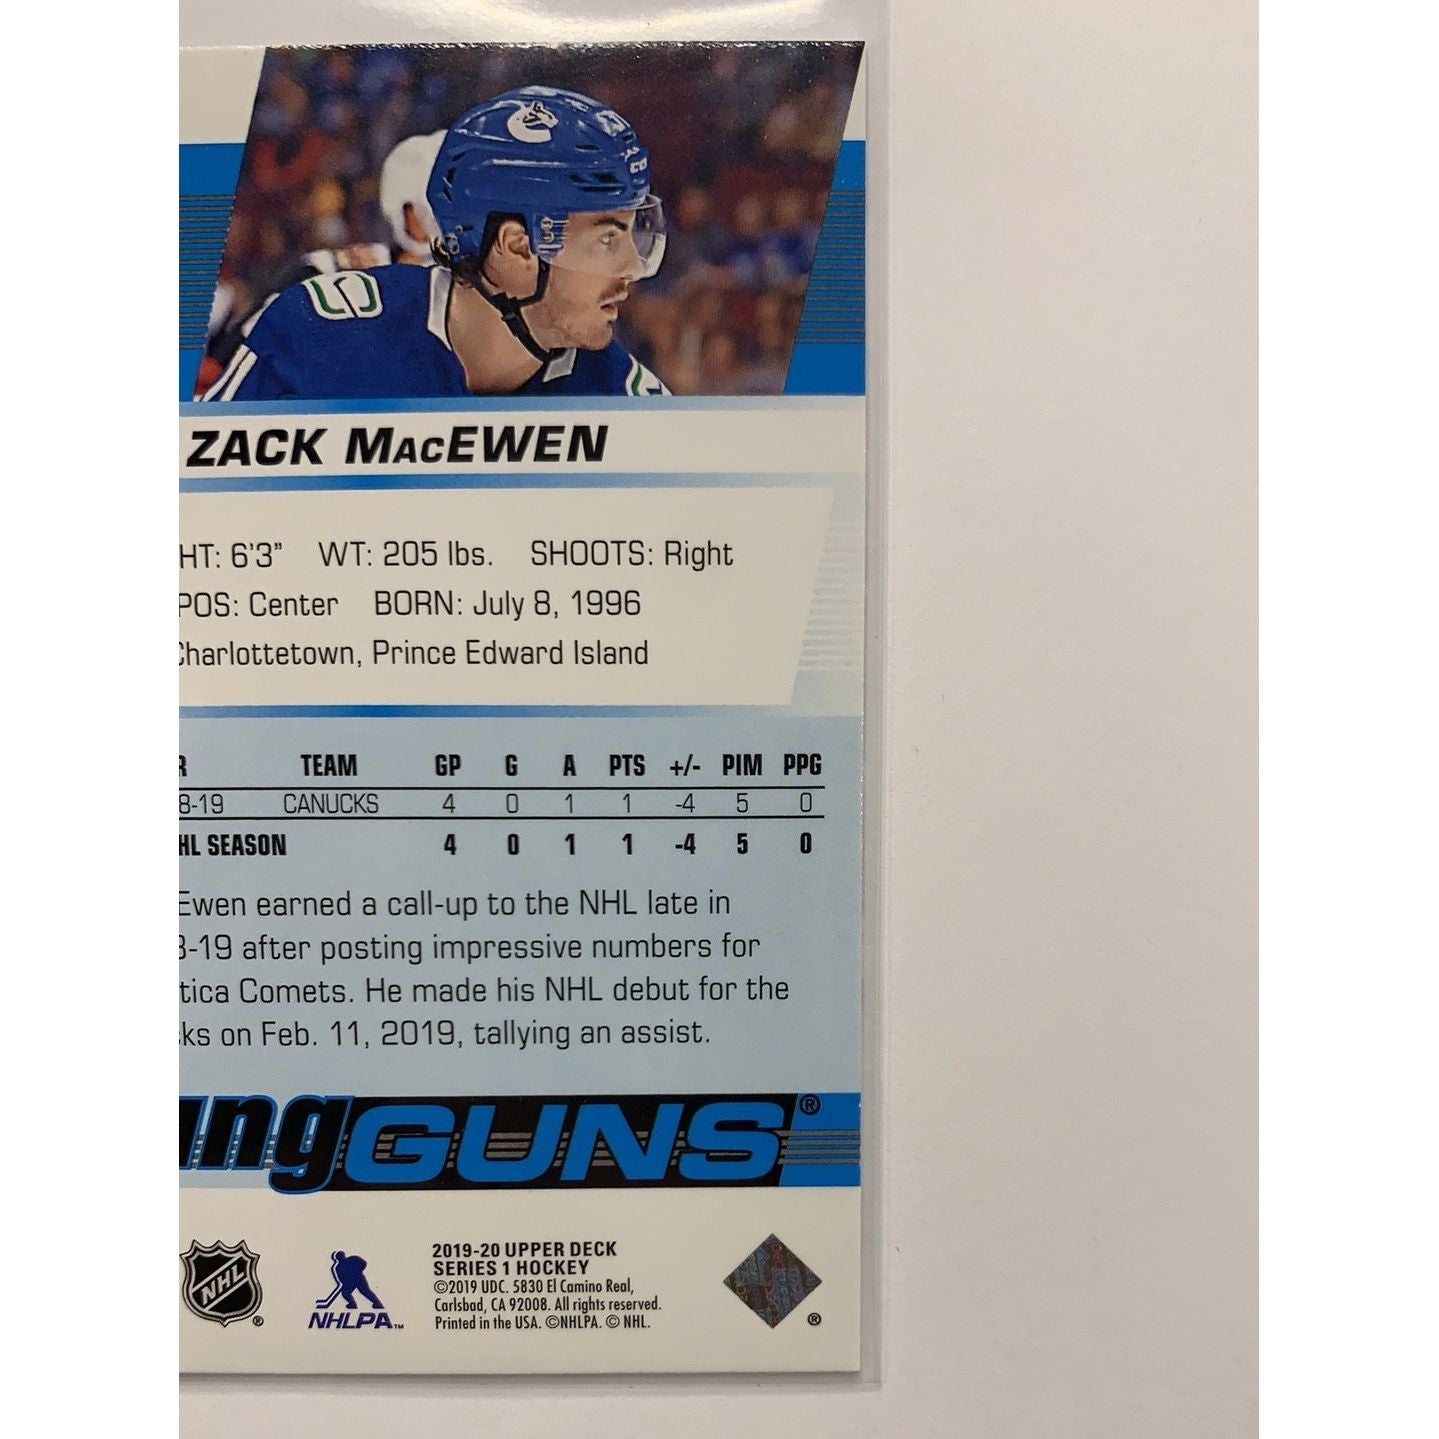  2019-20 Upper Deck Series 1 Zack Macewen Young Guns  Local Legends Cards & Collectibles